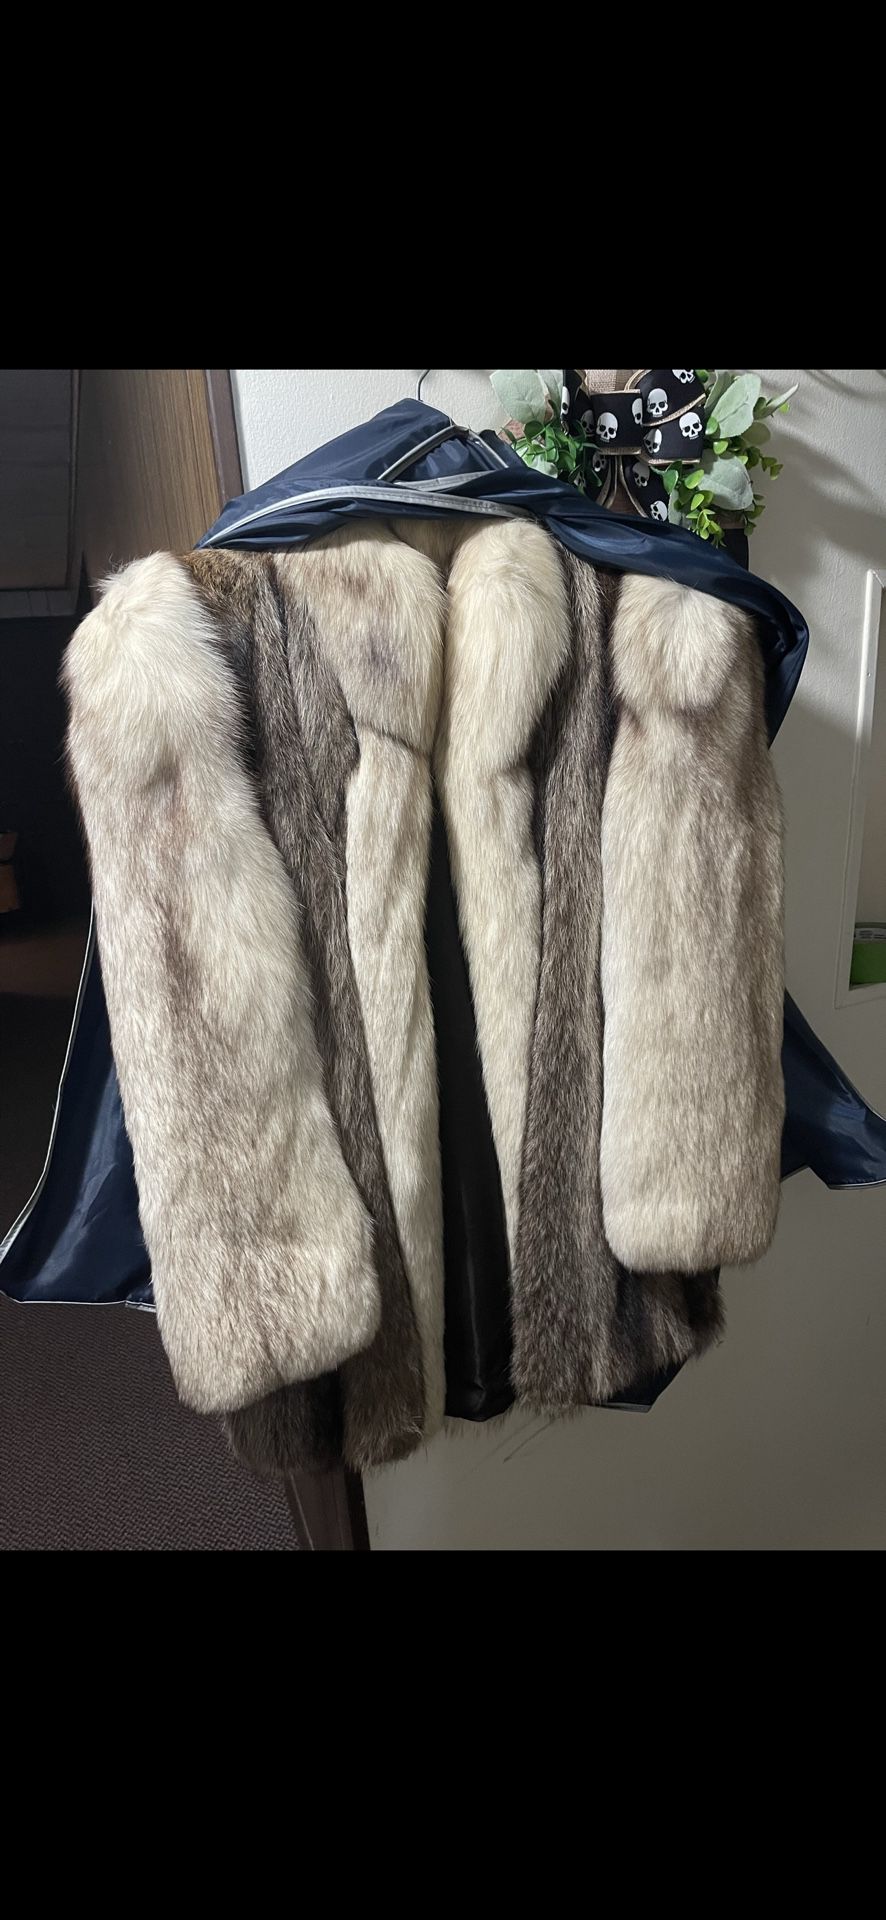 Real Mink Coat From Sabau Furs On Detroit Road Size L